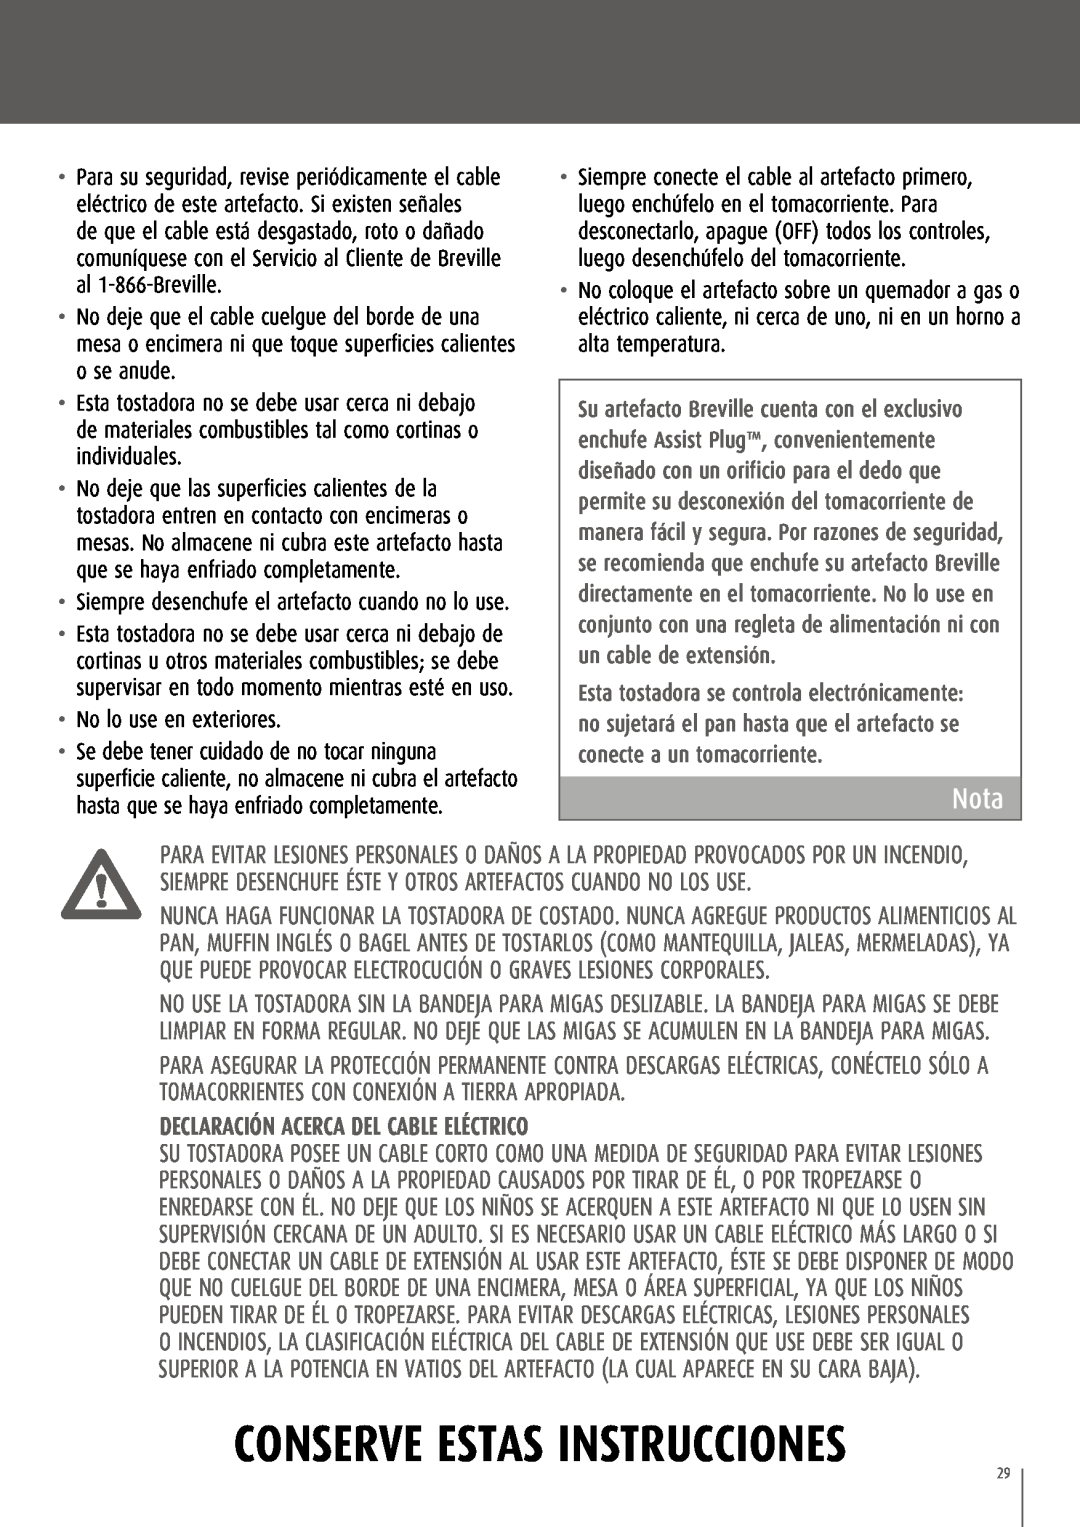 Breville CT75XL/A manual Nota, Declaración acerca del cable eléctrico, Conserve Estas Instrucciones 